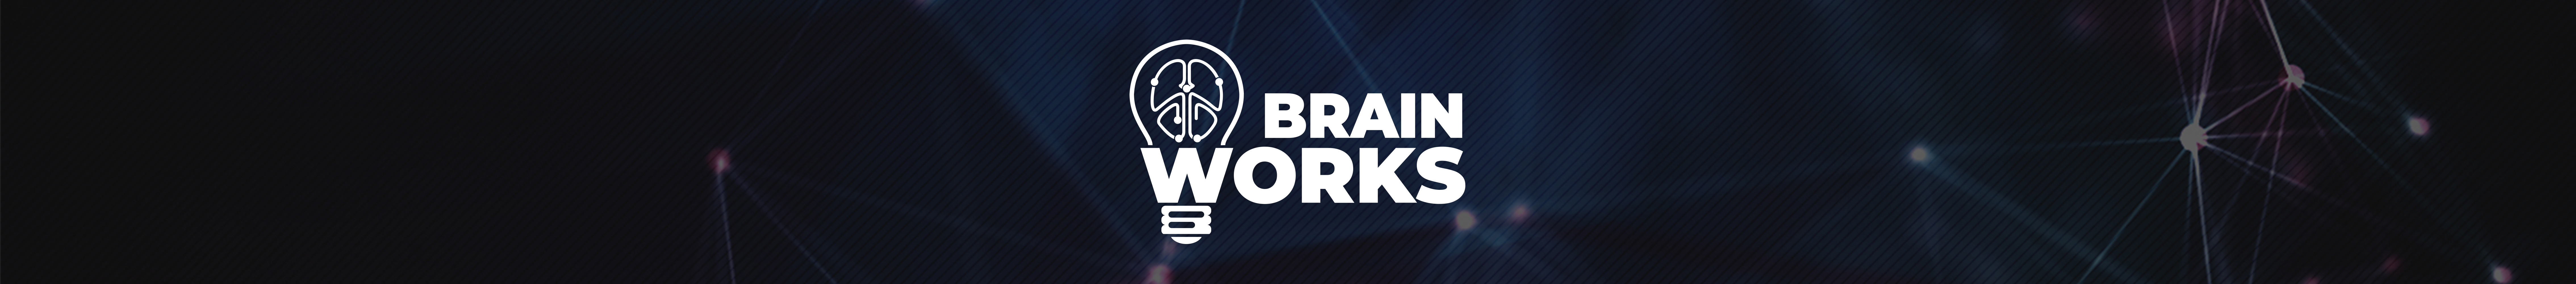 Brain Works のプロファイルバナー